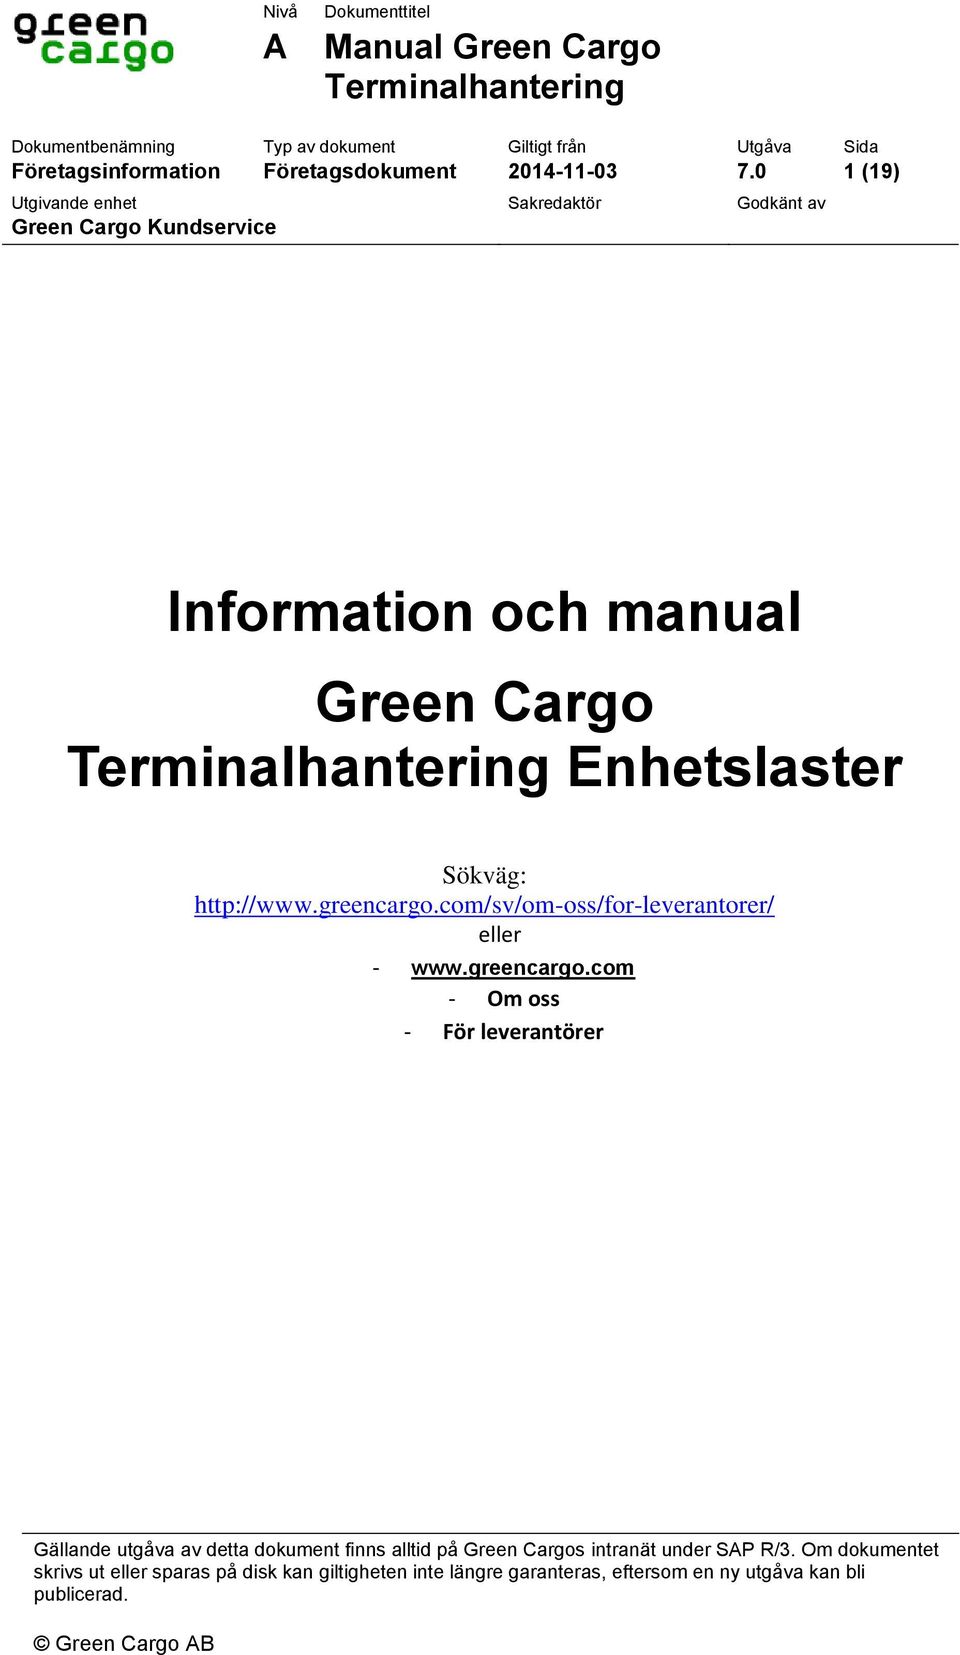 0 1 (19) Utgivande enhet Sakredaktör Godkänt av Green Cargo Kundservice Information och manual Green Cargo Terminalhantering Enhetslaster Sökväg: http://www.